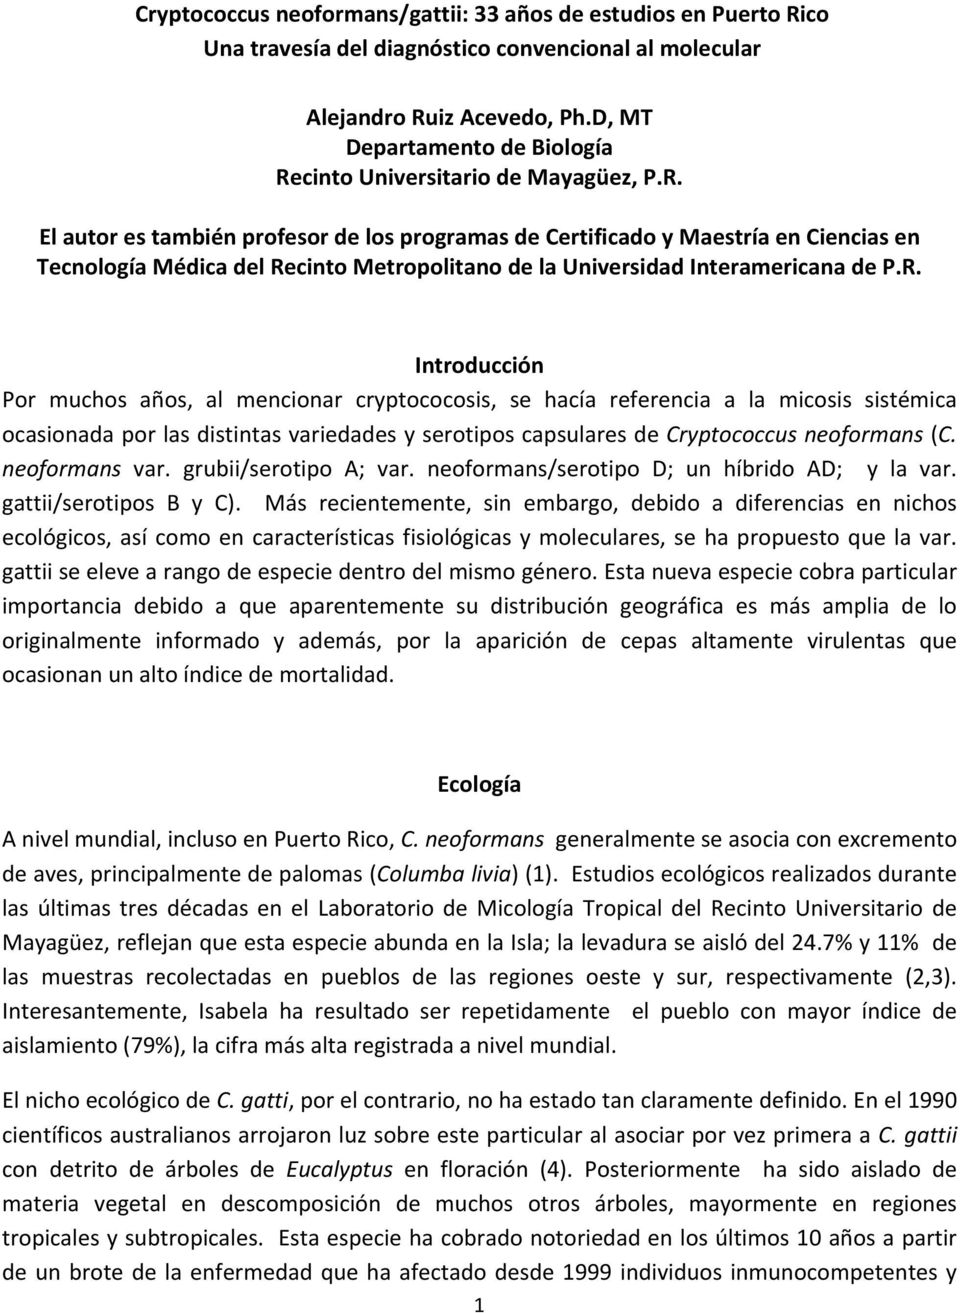 cinto Universitario de Mayagüez, P.R.